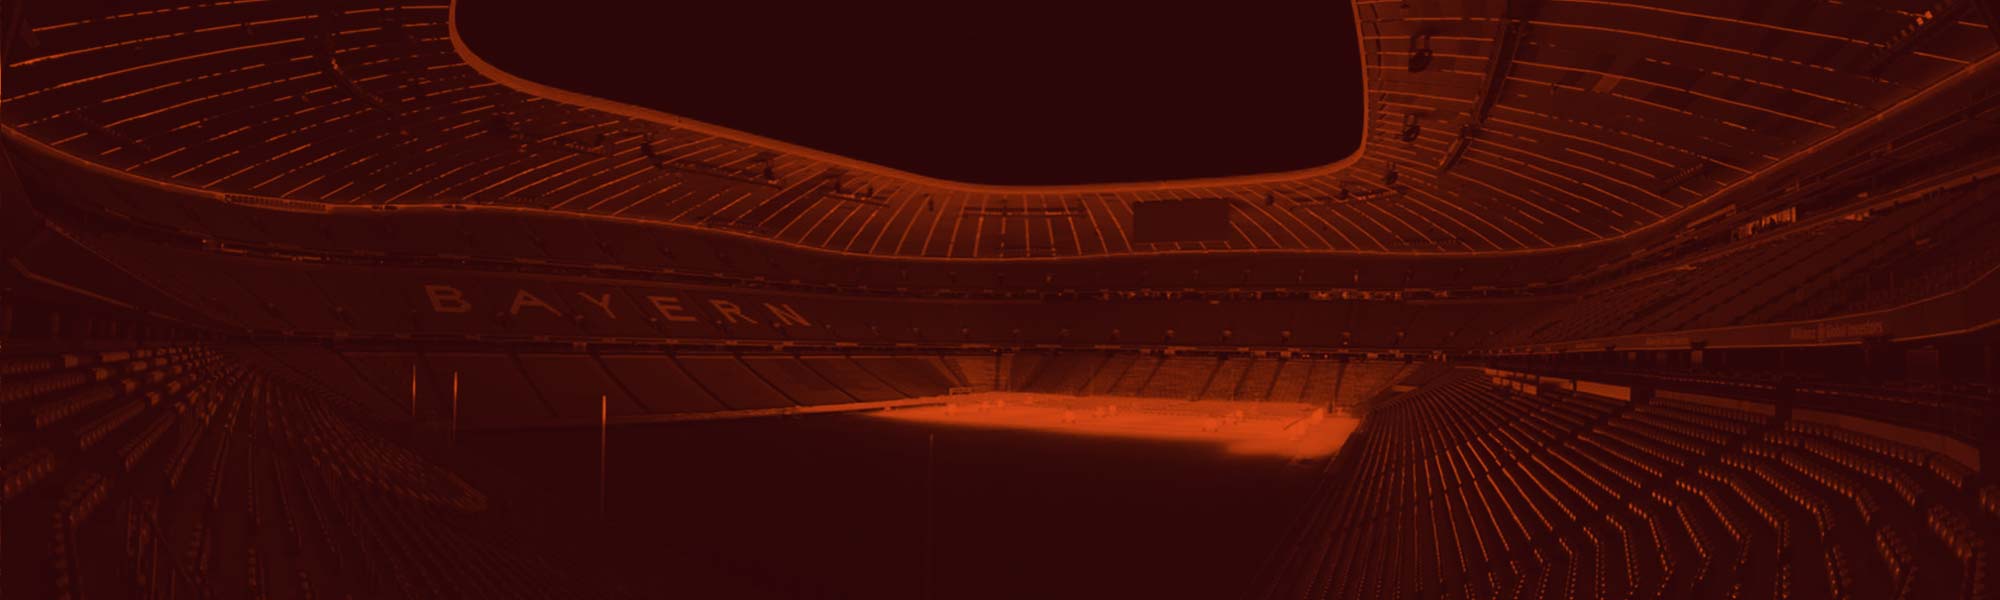 Beschallung & Beleuchtung Allianz Arena